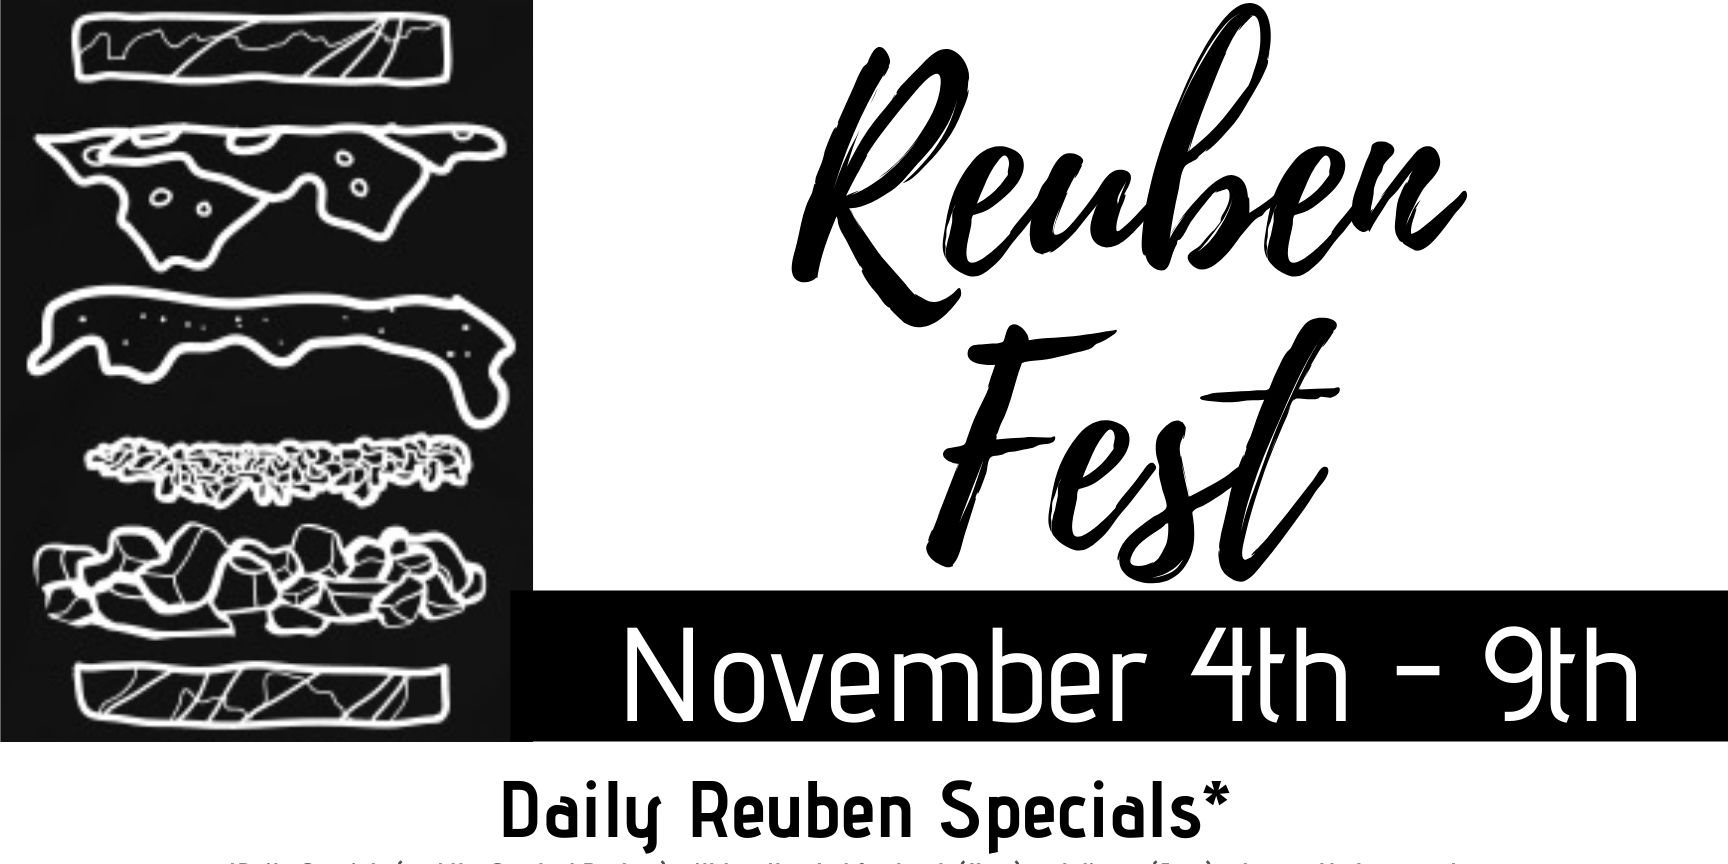 ReubenFest 2019 promotional image